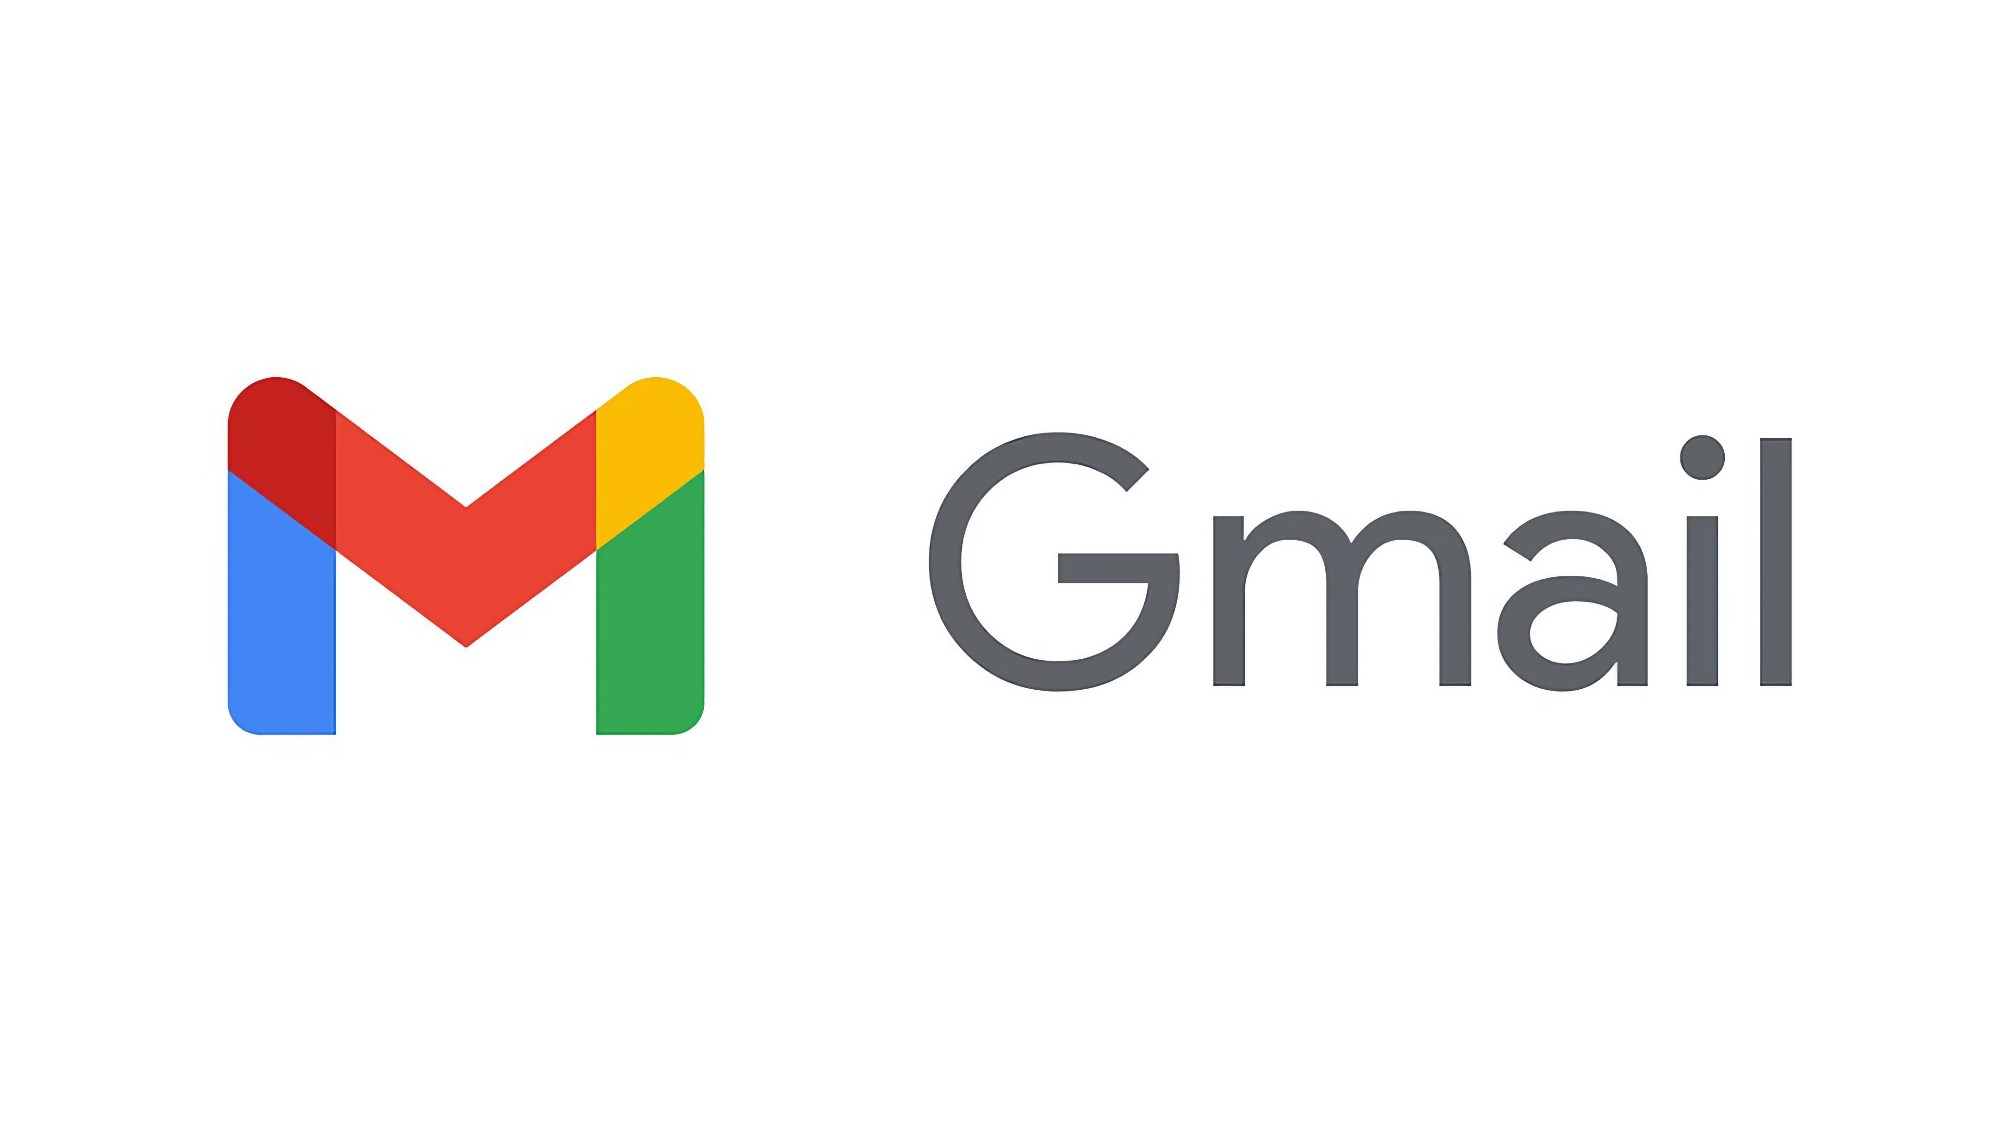 Emojiler, Gmail'e Ekim'in Sonunda Masaüstü ve Mobile Eklenecek